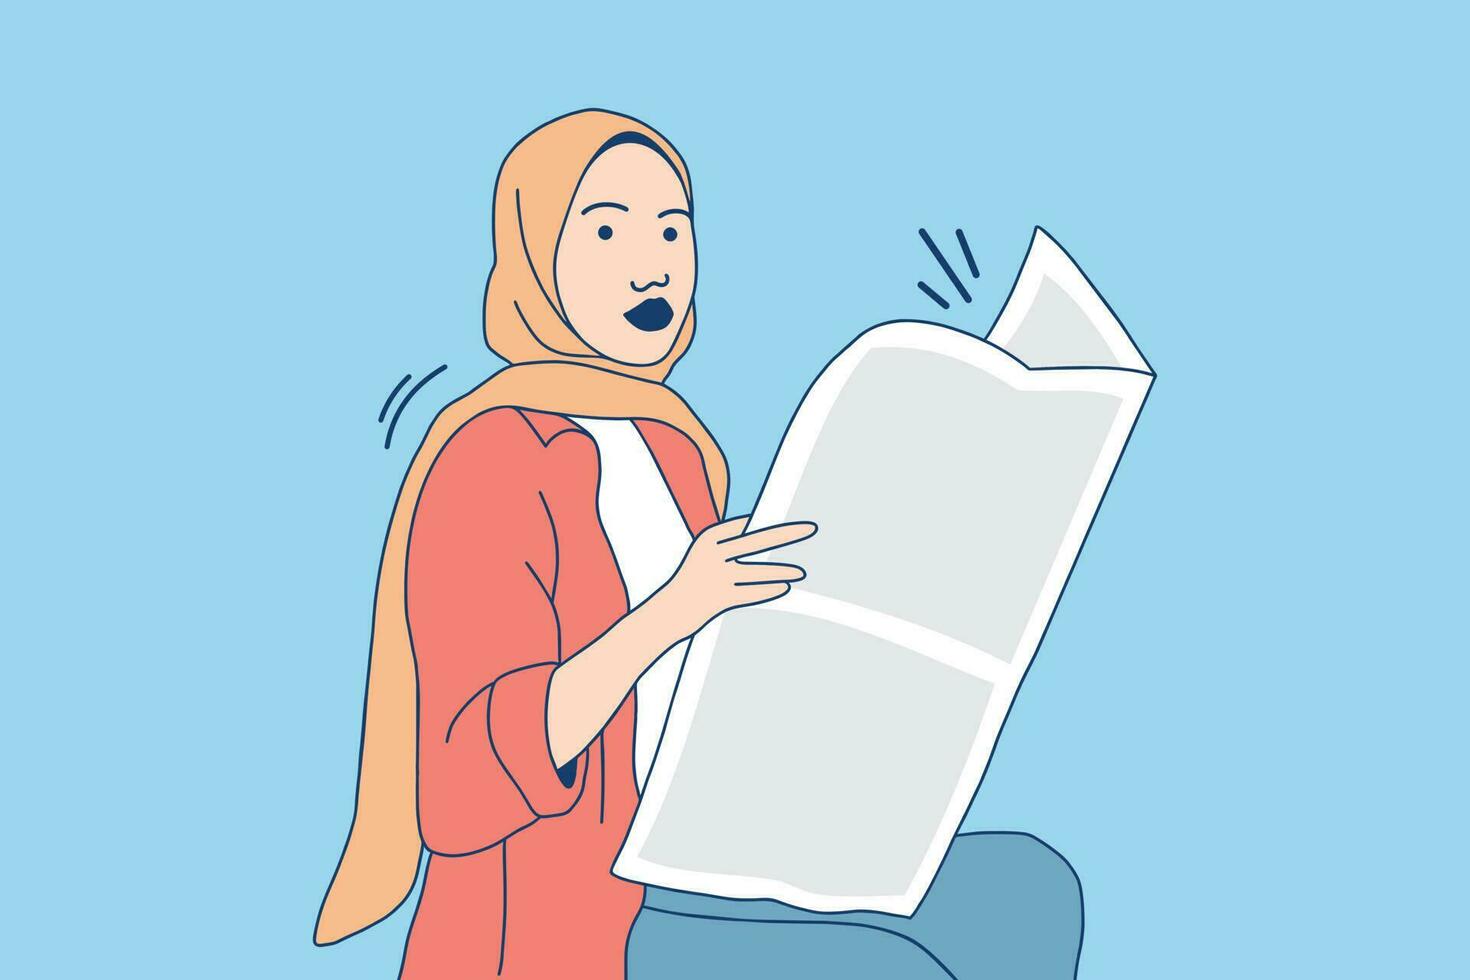 illustrationer av skön företag muslim kvinna läsning en tidning vektor